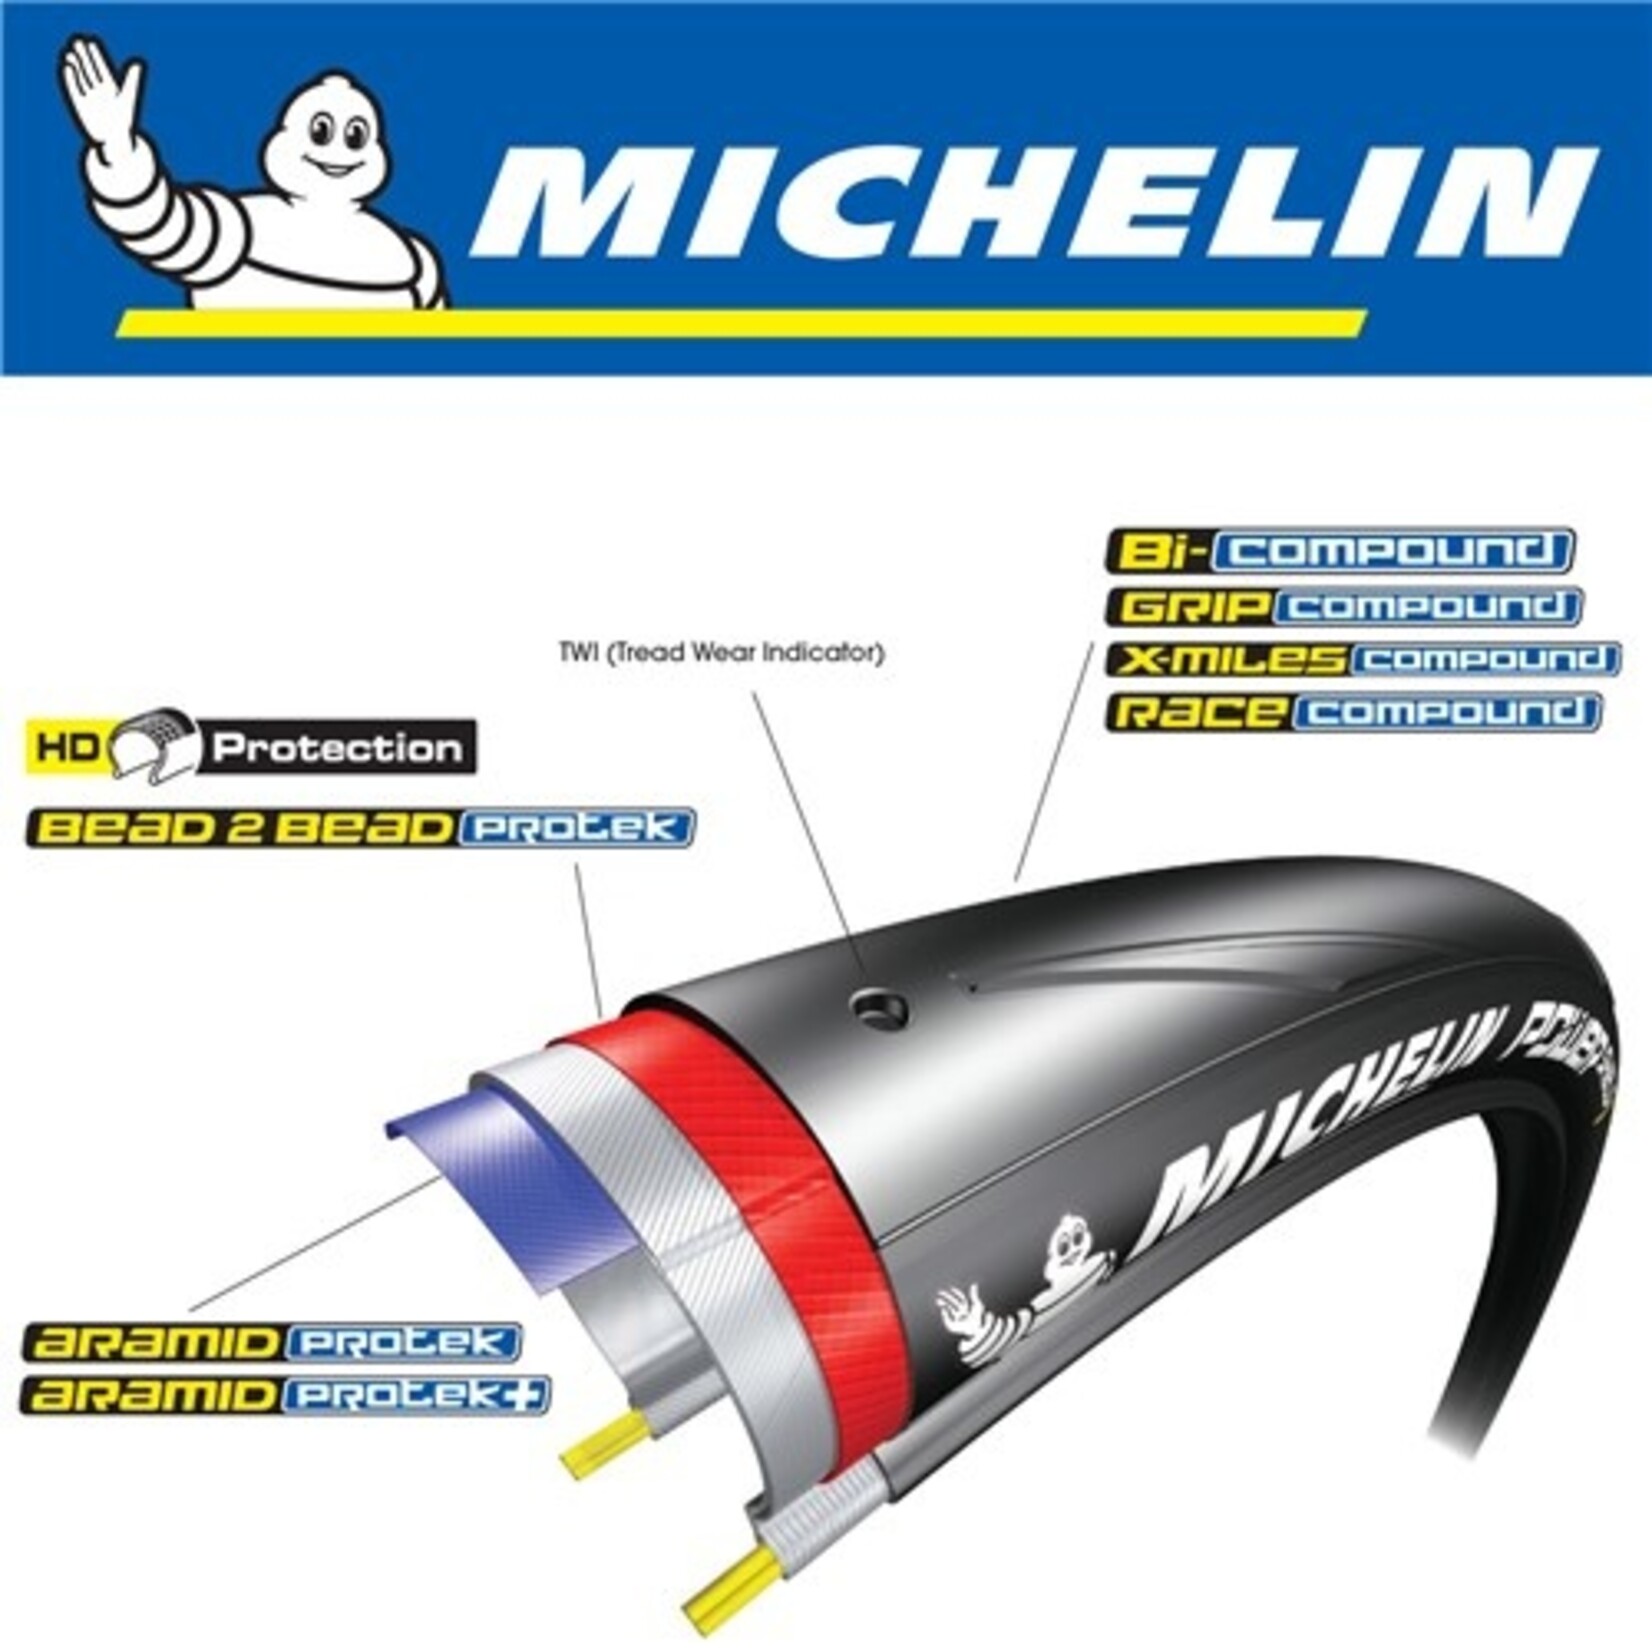 Michelin Michelin Bike Tyre - Dynamic Sport - 700 X 28C - Wire Bead Tyre - Black - Pair